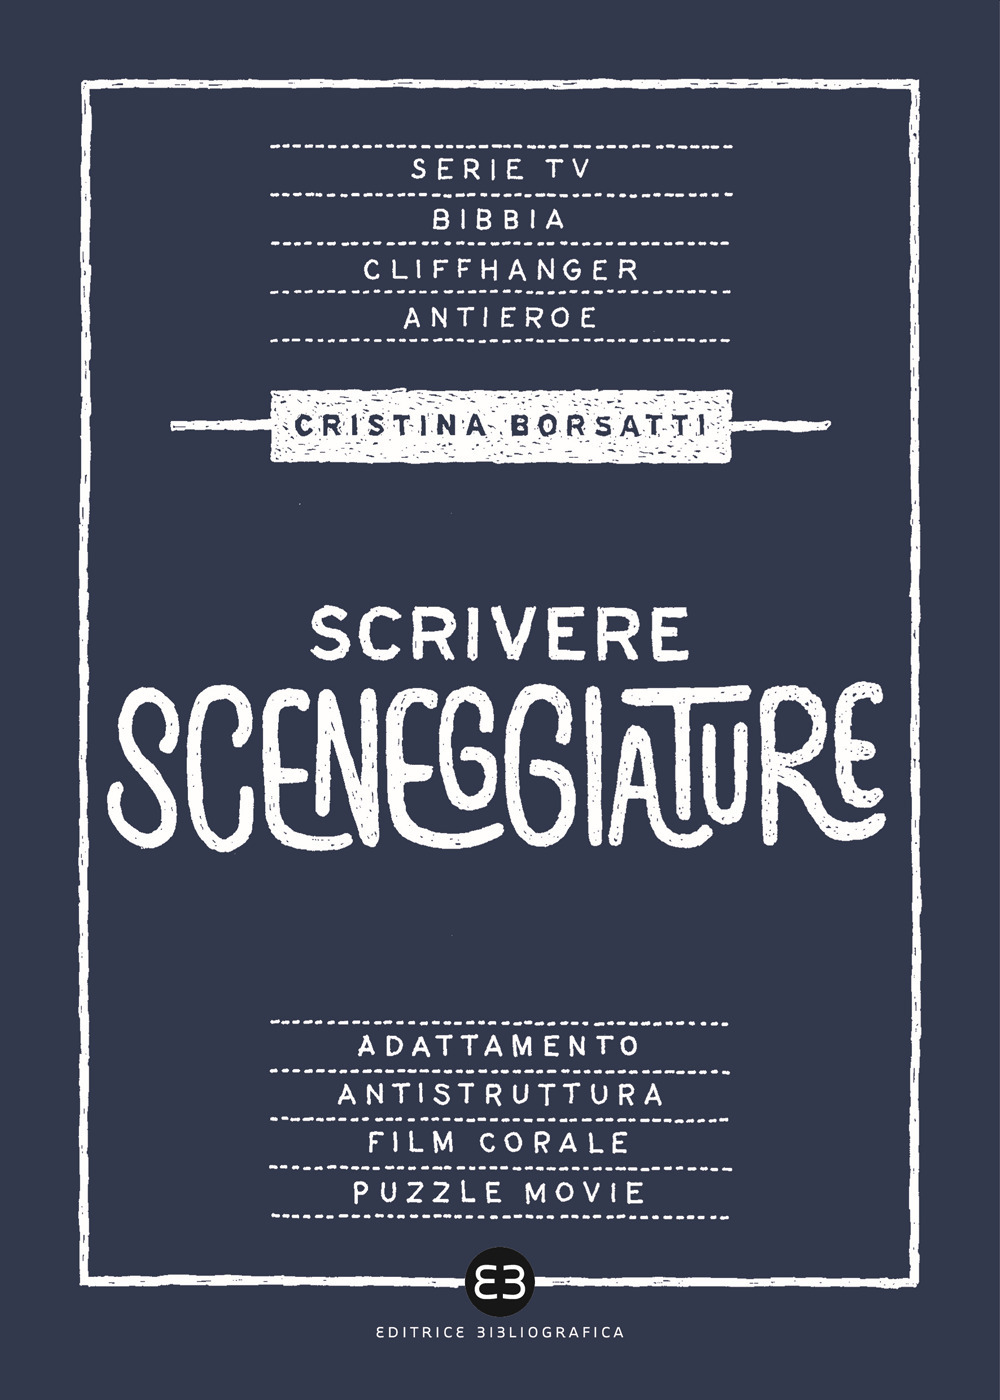 Libri Cristina Borsatti - Scrivere Sceneggiature. Dal Grande Al Piccolo Schermo NUOVO SIGILLATO, EDIZIONE DEL 26/11/2020 SUBITO DISPONIBILE